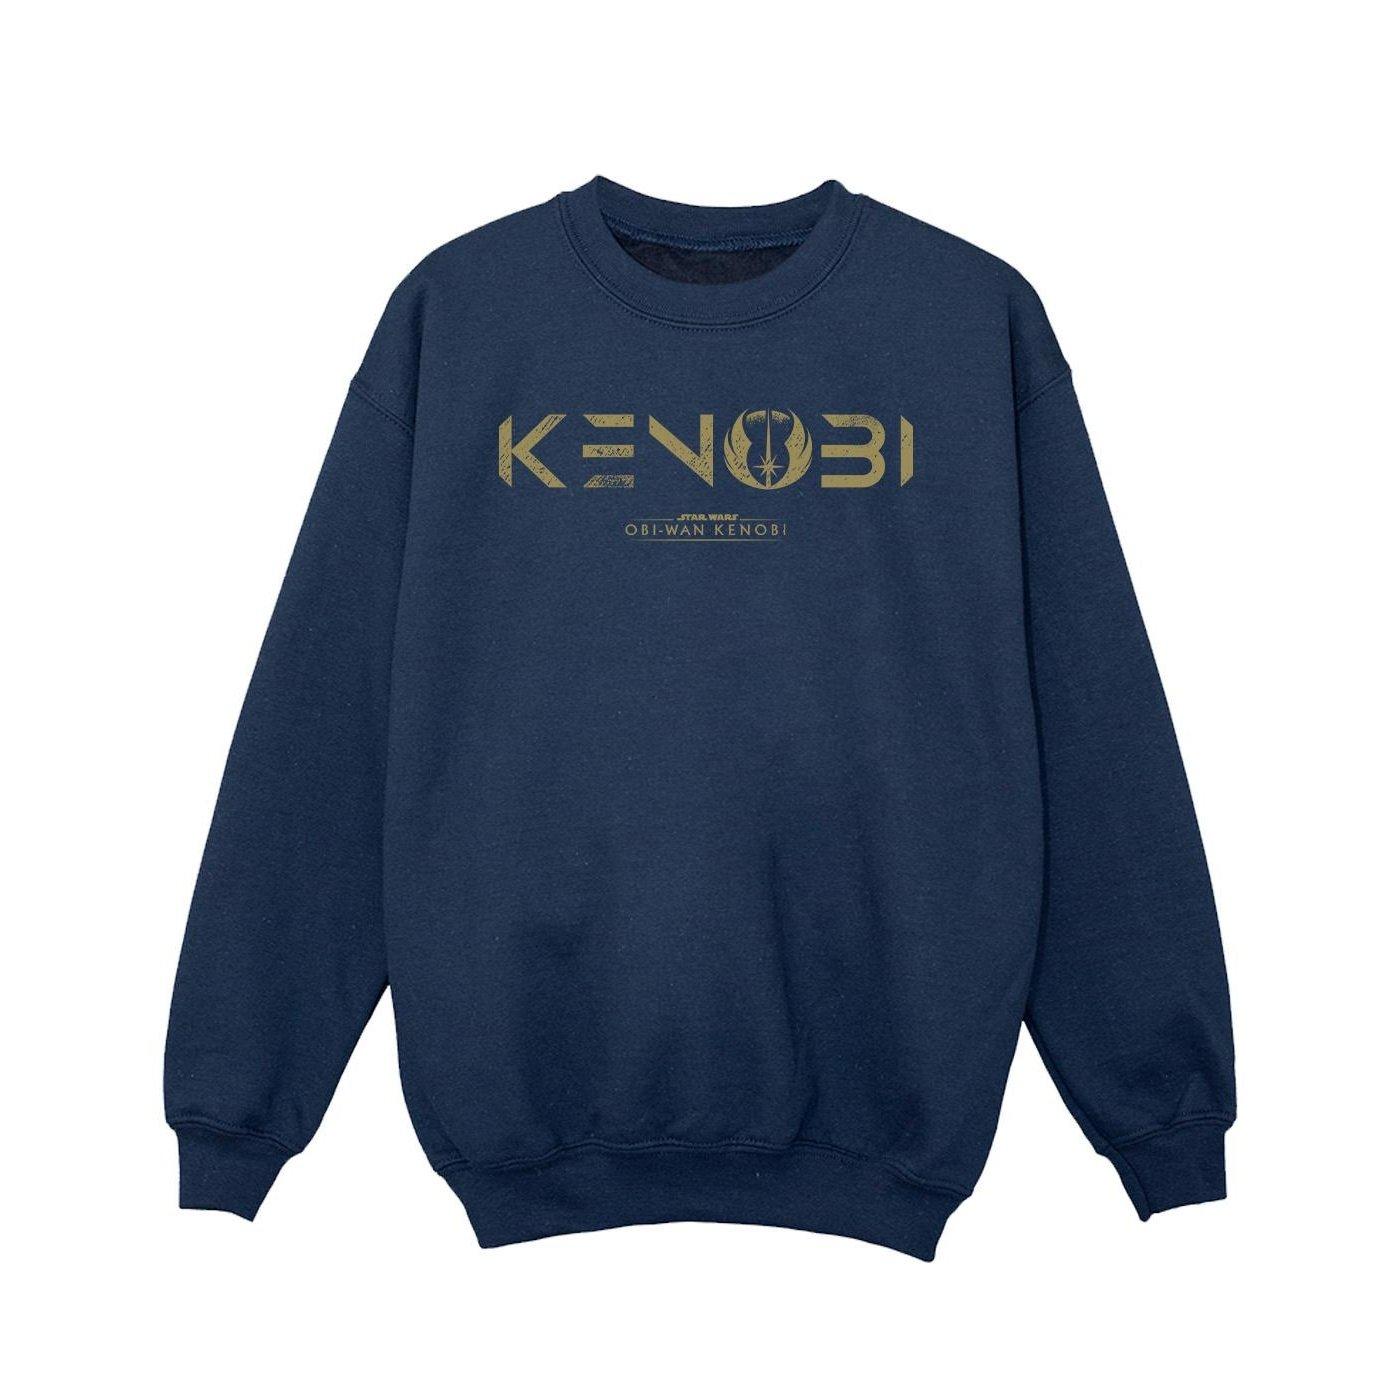 Obiwan Kenobi Logo Sweatshirt Mädchen Marine 128 von STAR WARS